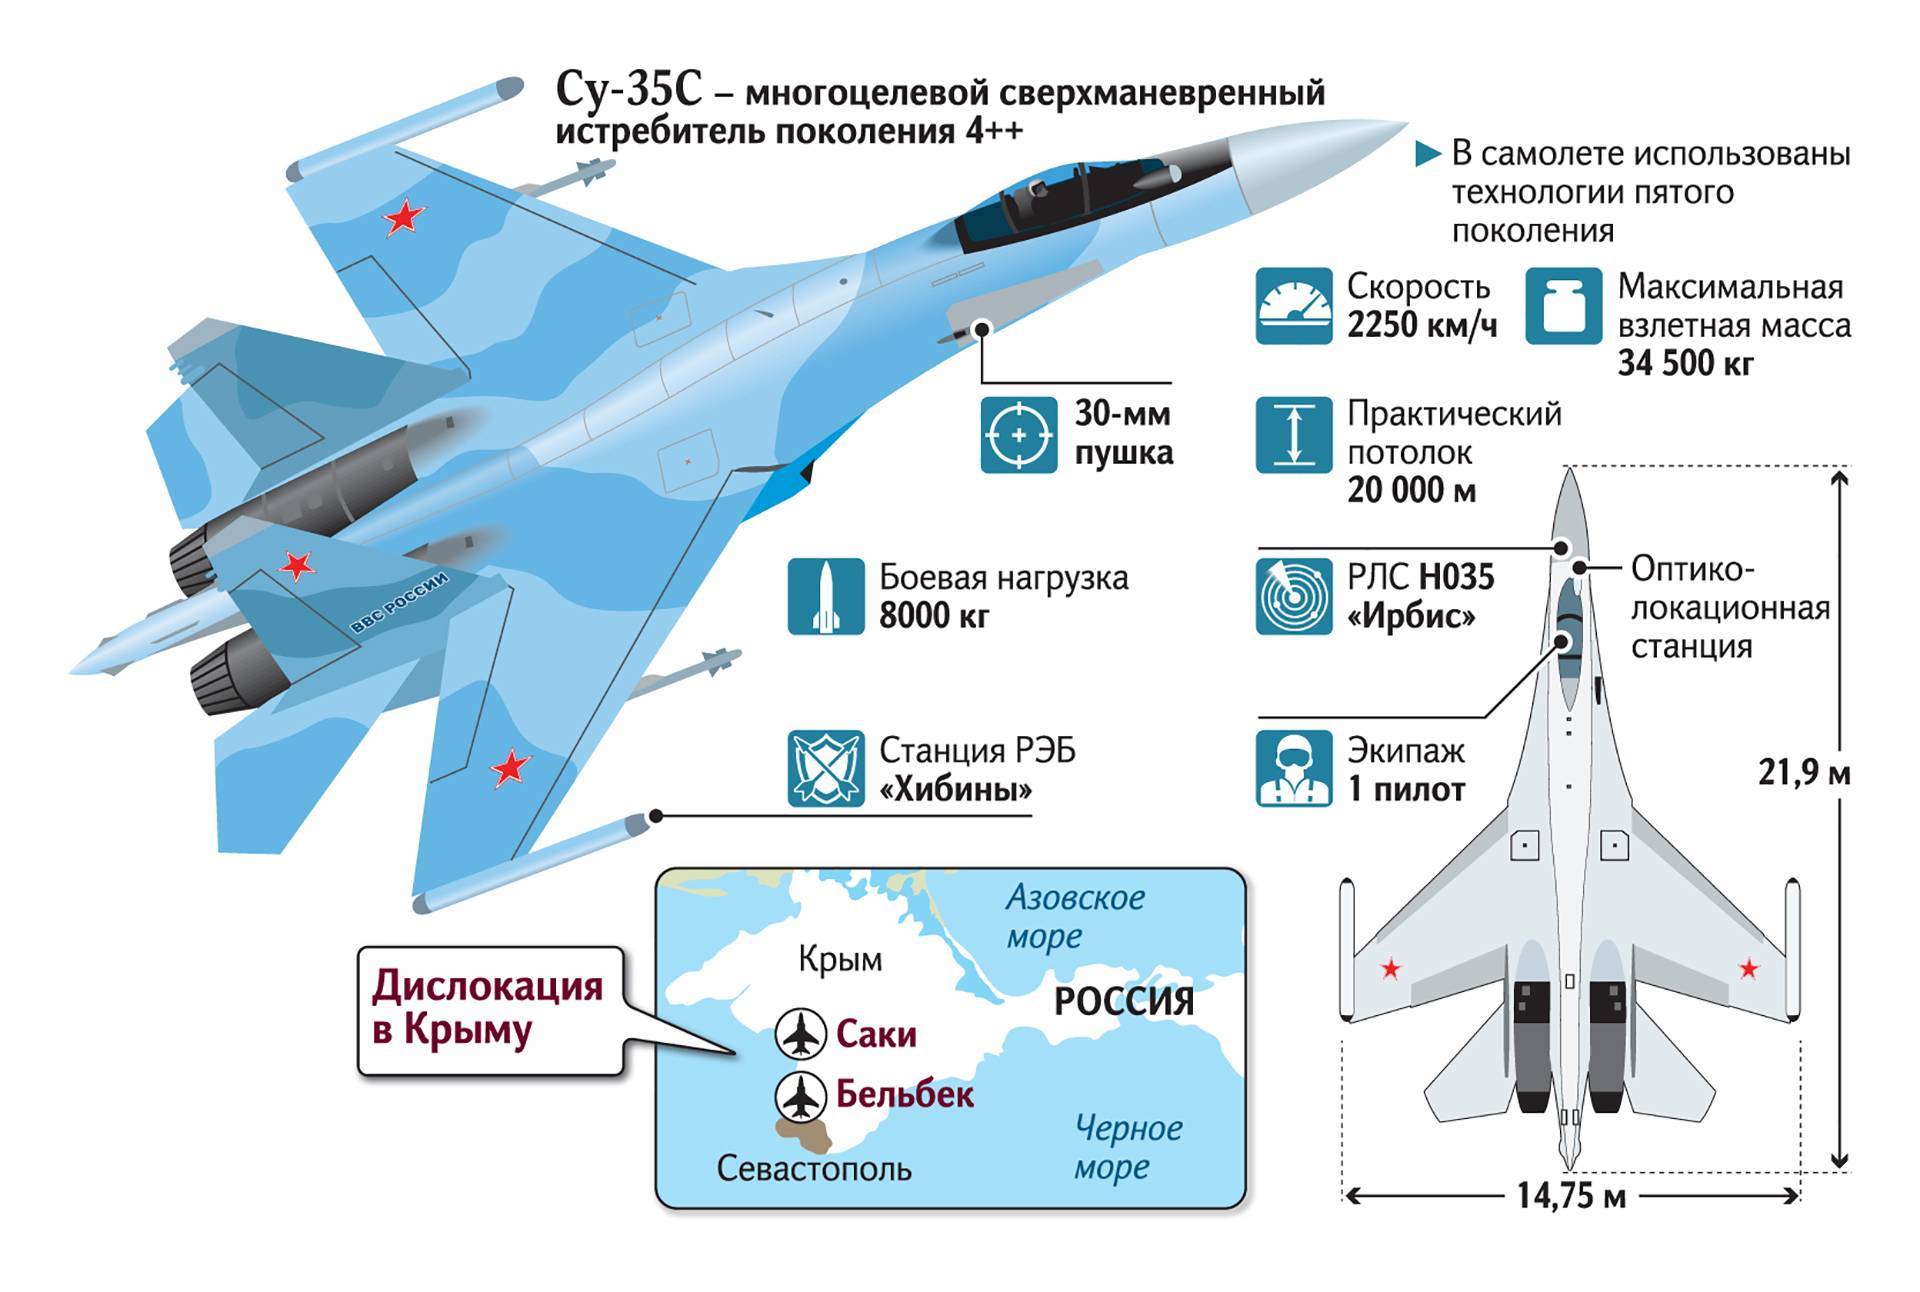 Истребитель Су-35С поколения 4++, его сравнили с НЛО на авиасалоне Ле-Бурже